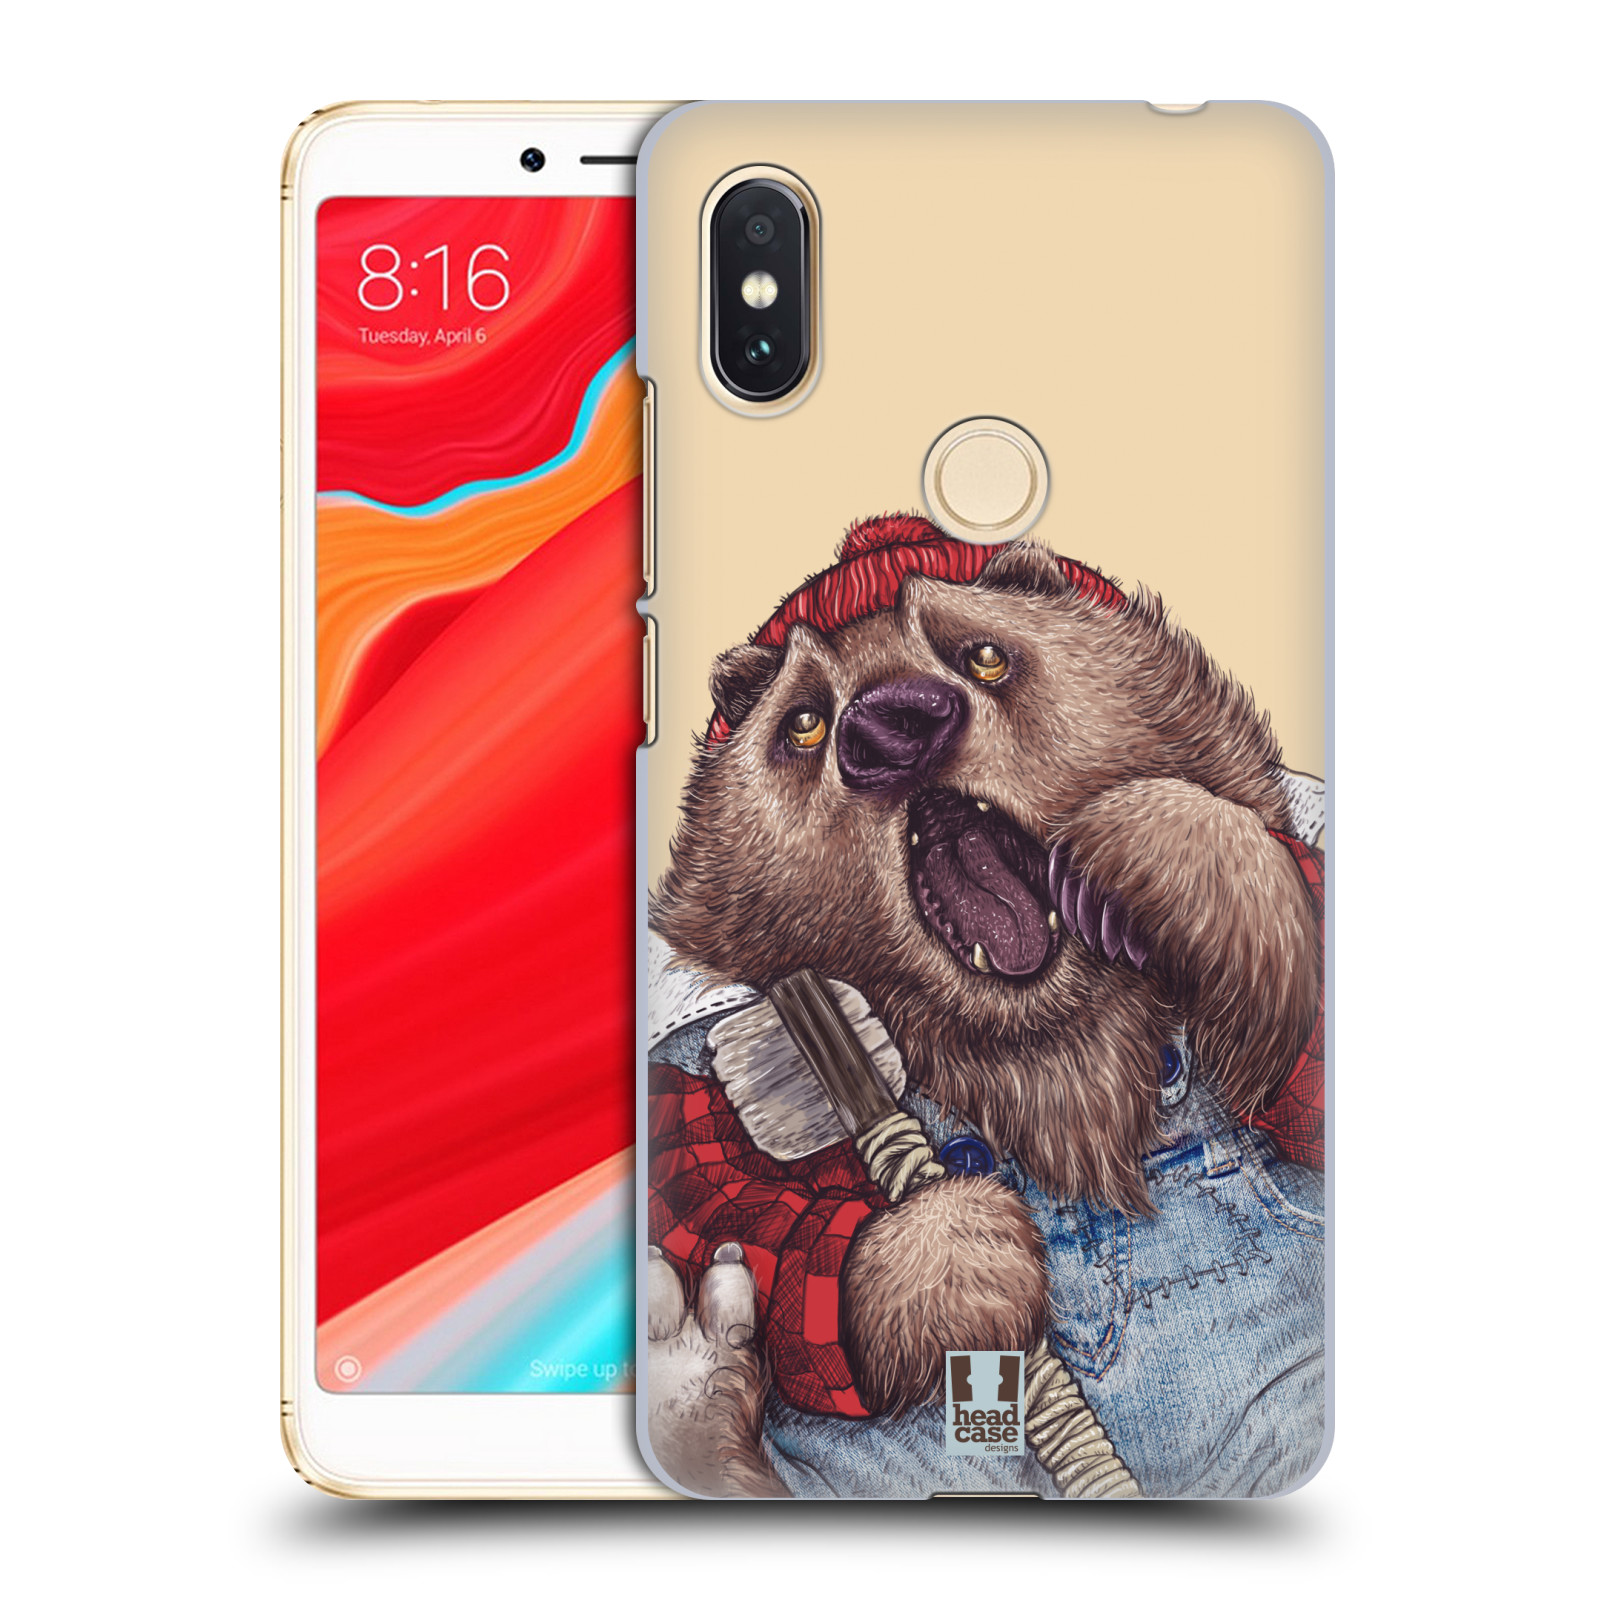 HEAD CASE plastový obal na mobil Xiaomi Redmi S2 vzor Kreslená zvířátka medvěd